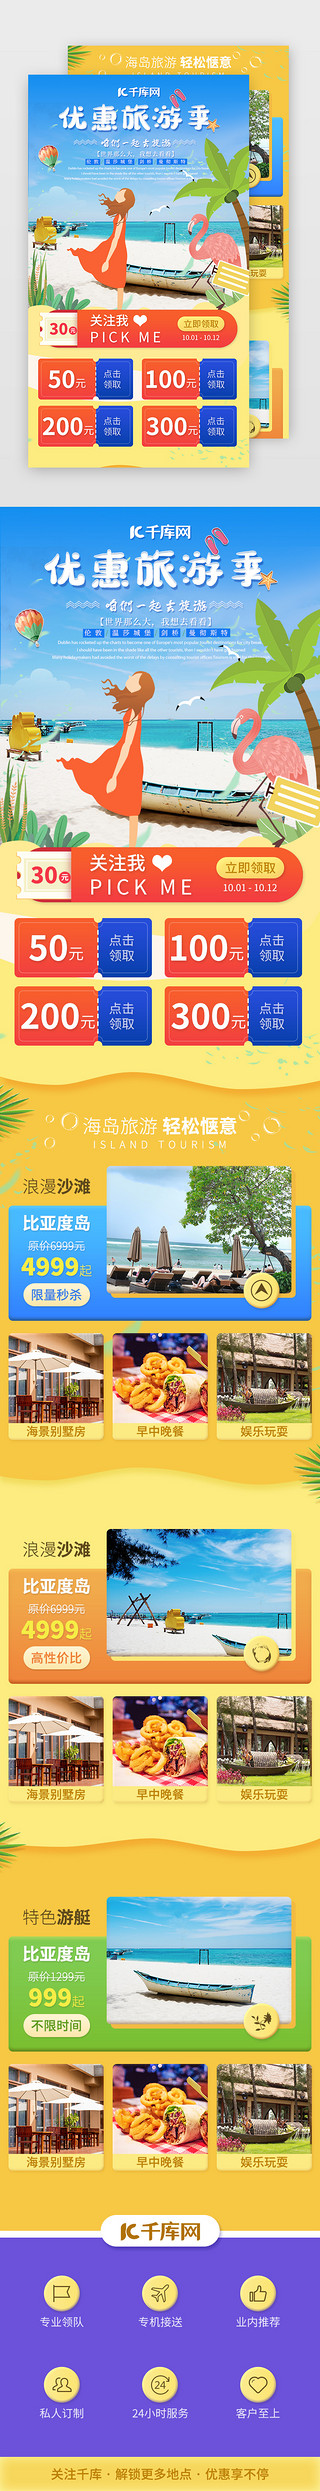 黄色蓝色海报UI设计素材_国庆旅游旅行景点介绍H5